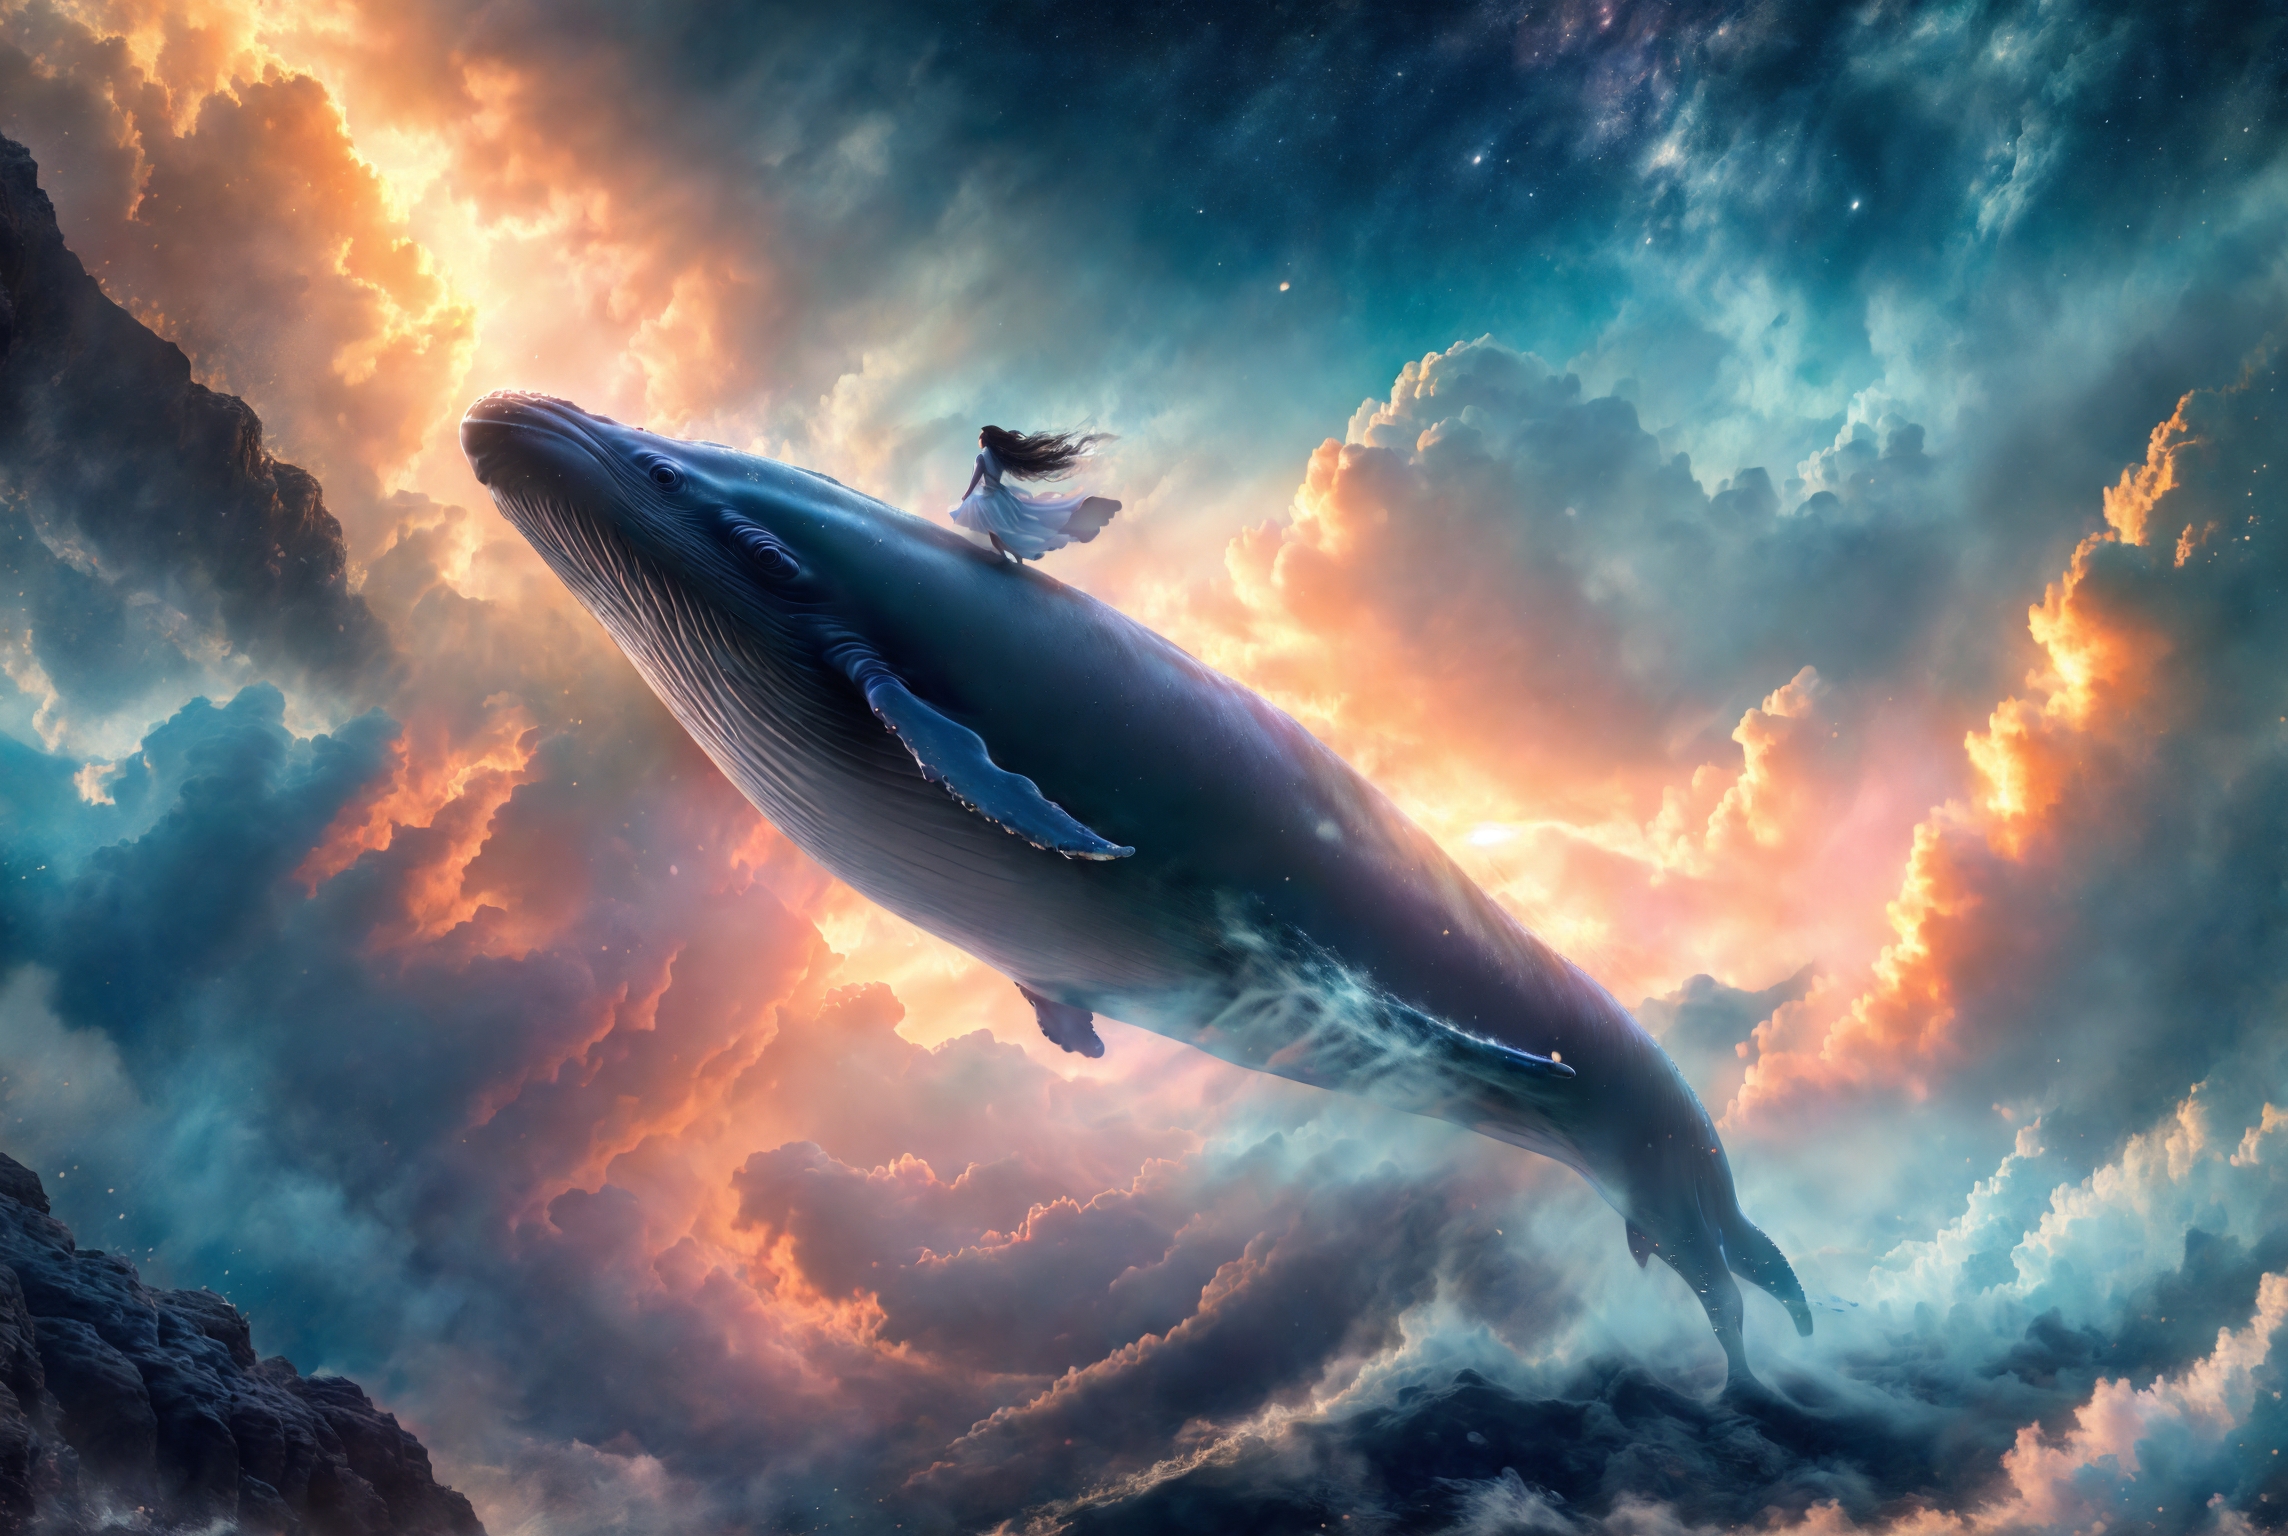 绪儿-飞鲸鱼 xuer Big whale image by XRYCJ